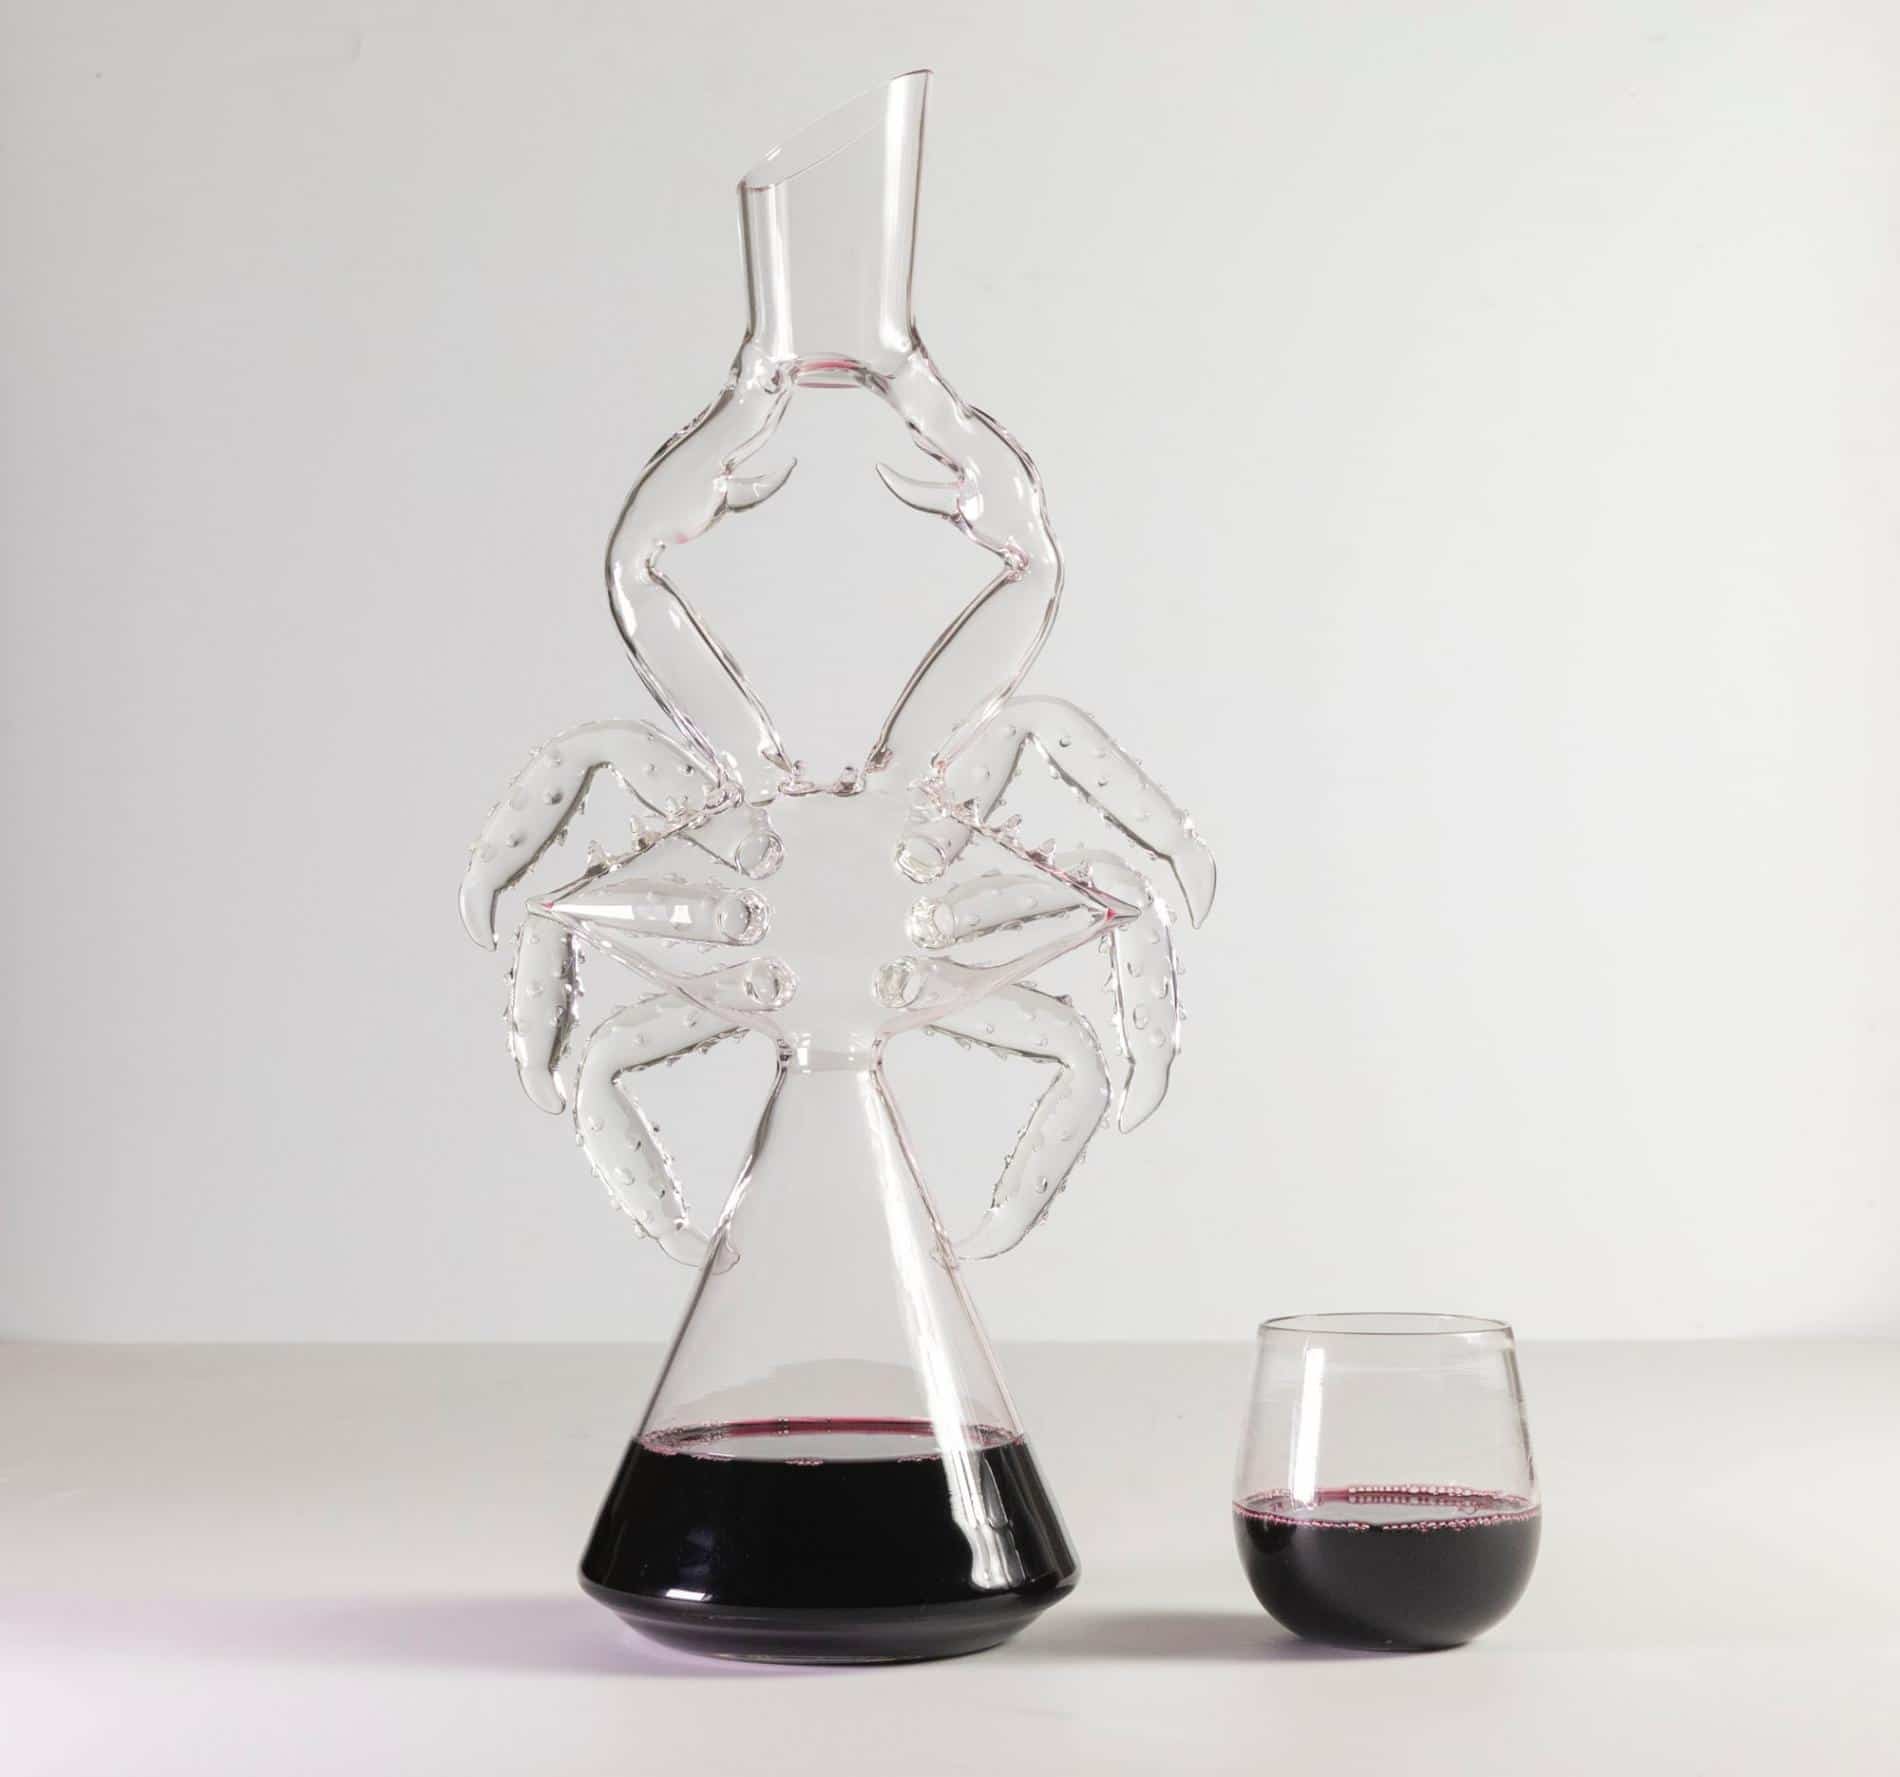 decantador de vino en vidrio araña charlie matz